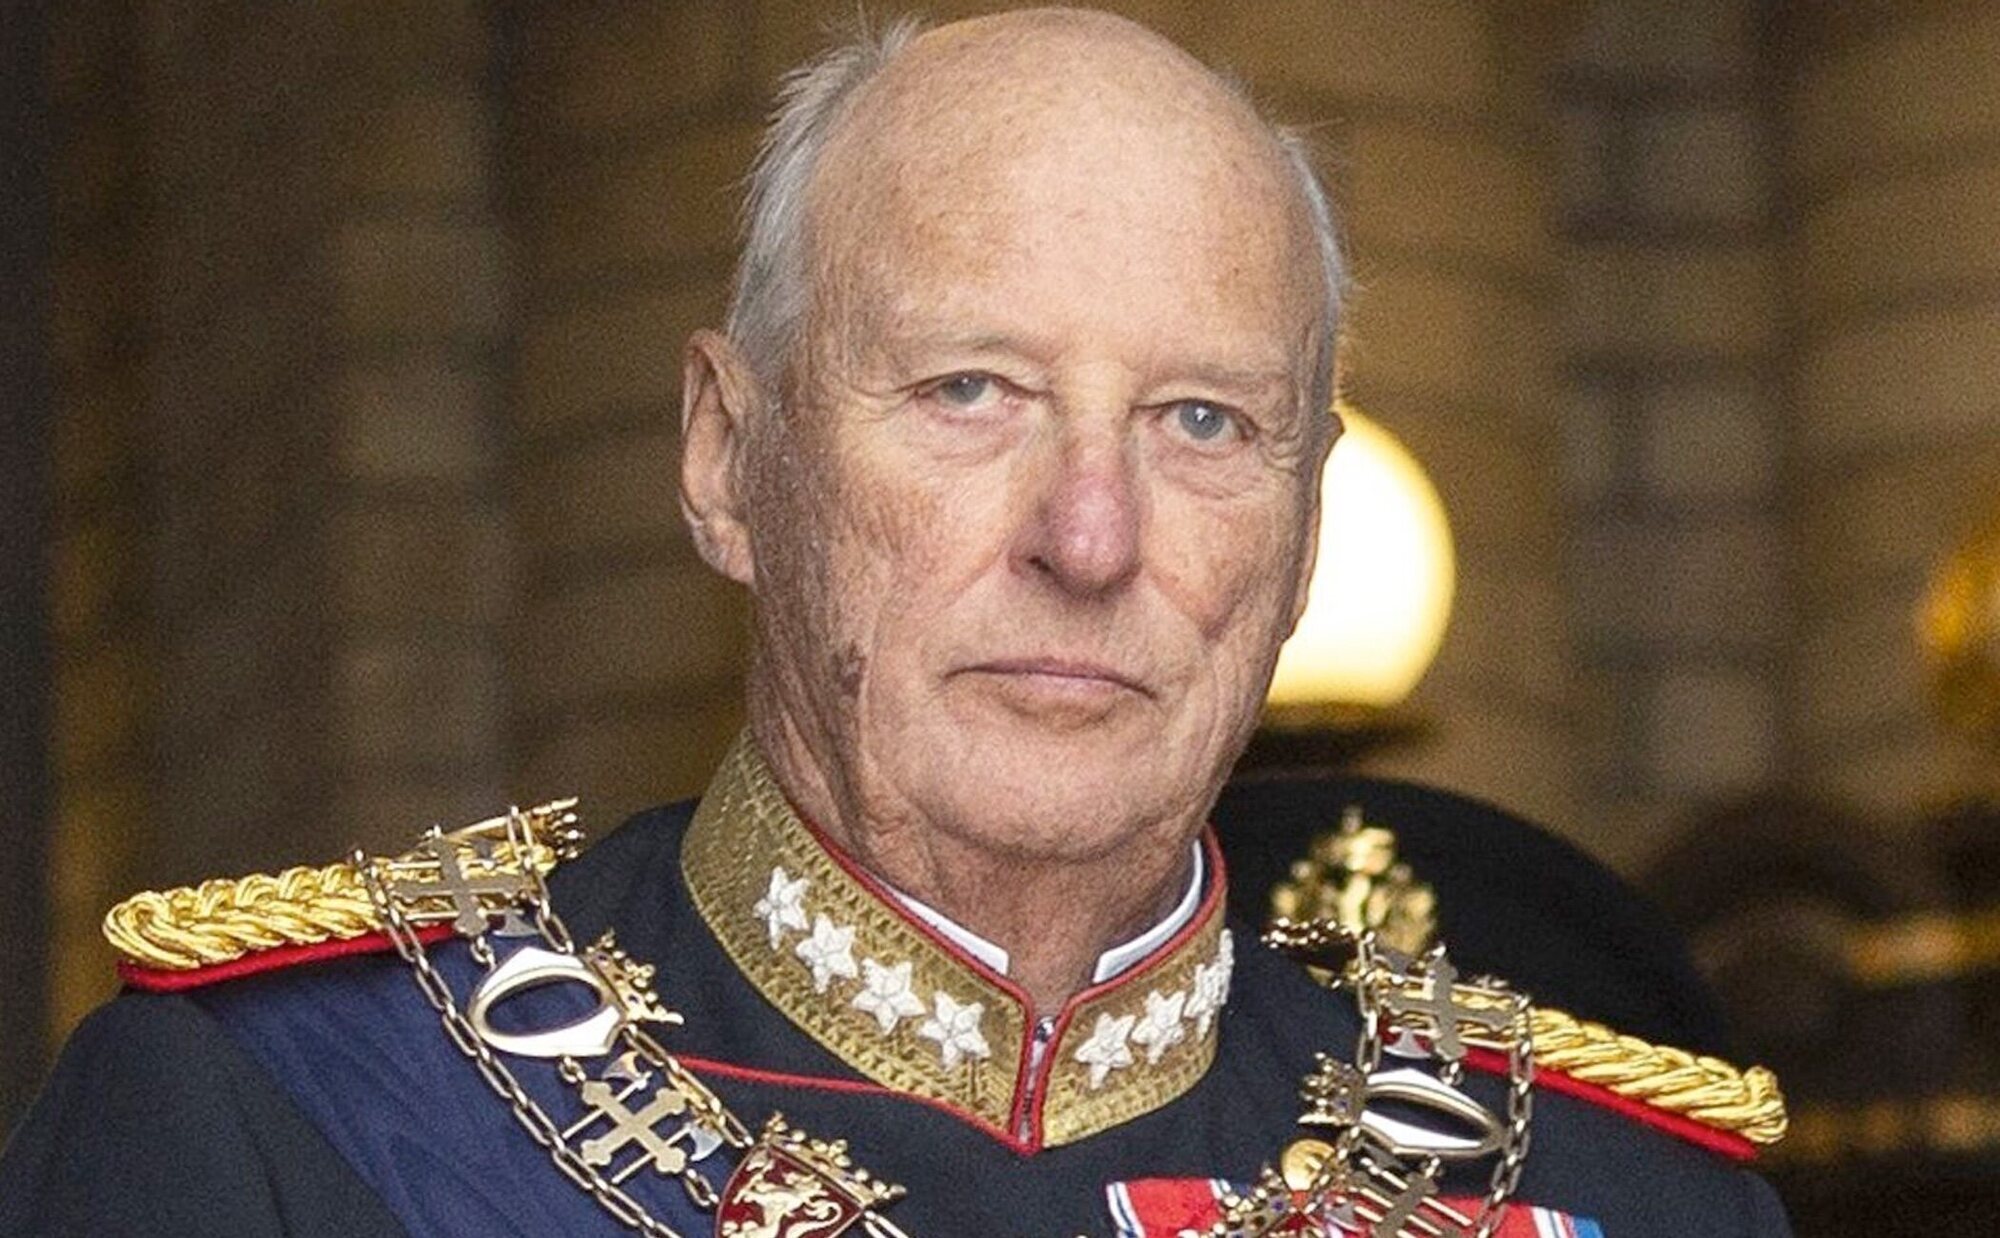 Harald de Noruega ingresa en el Rikshospitalet de Oslo tras su exitoso vuelo a Noruega desde Malasia